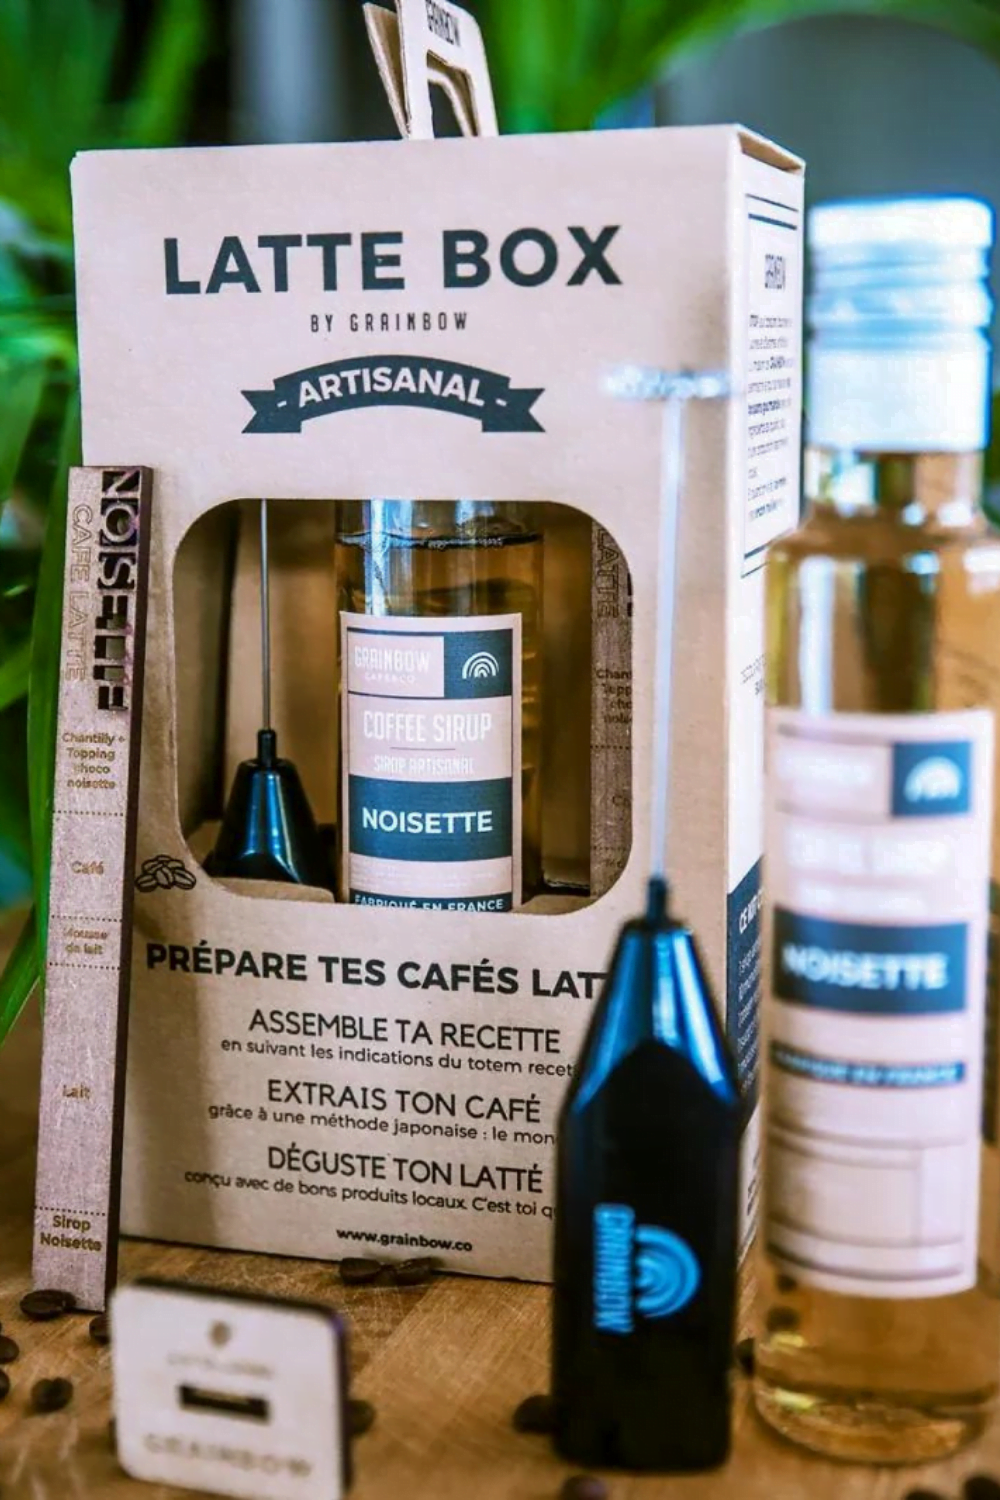 Latté Box - Grainbow, le distributeur de café aromatisé